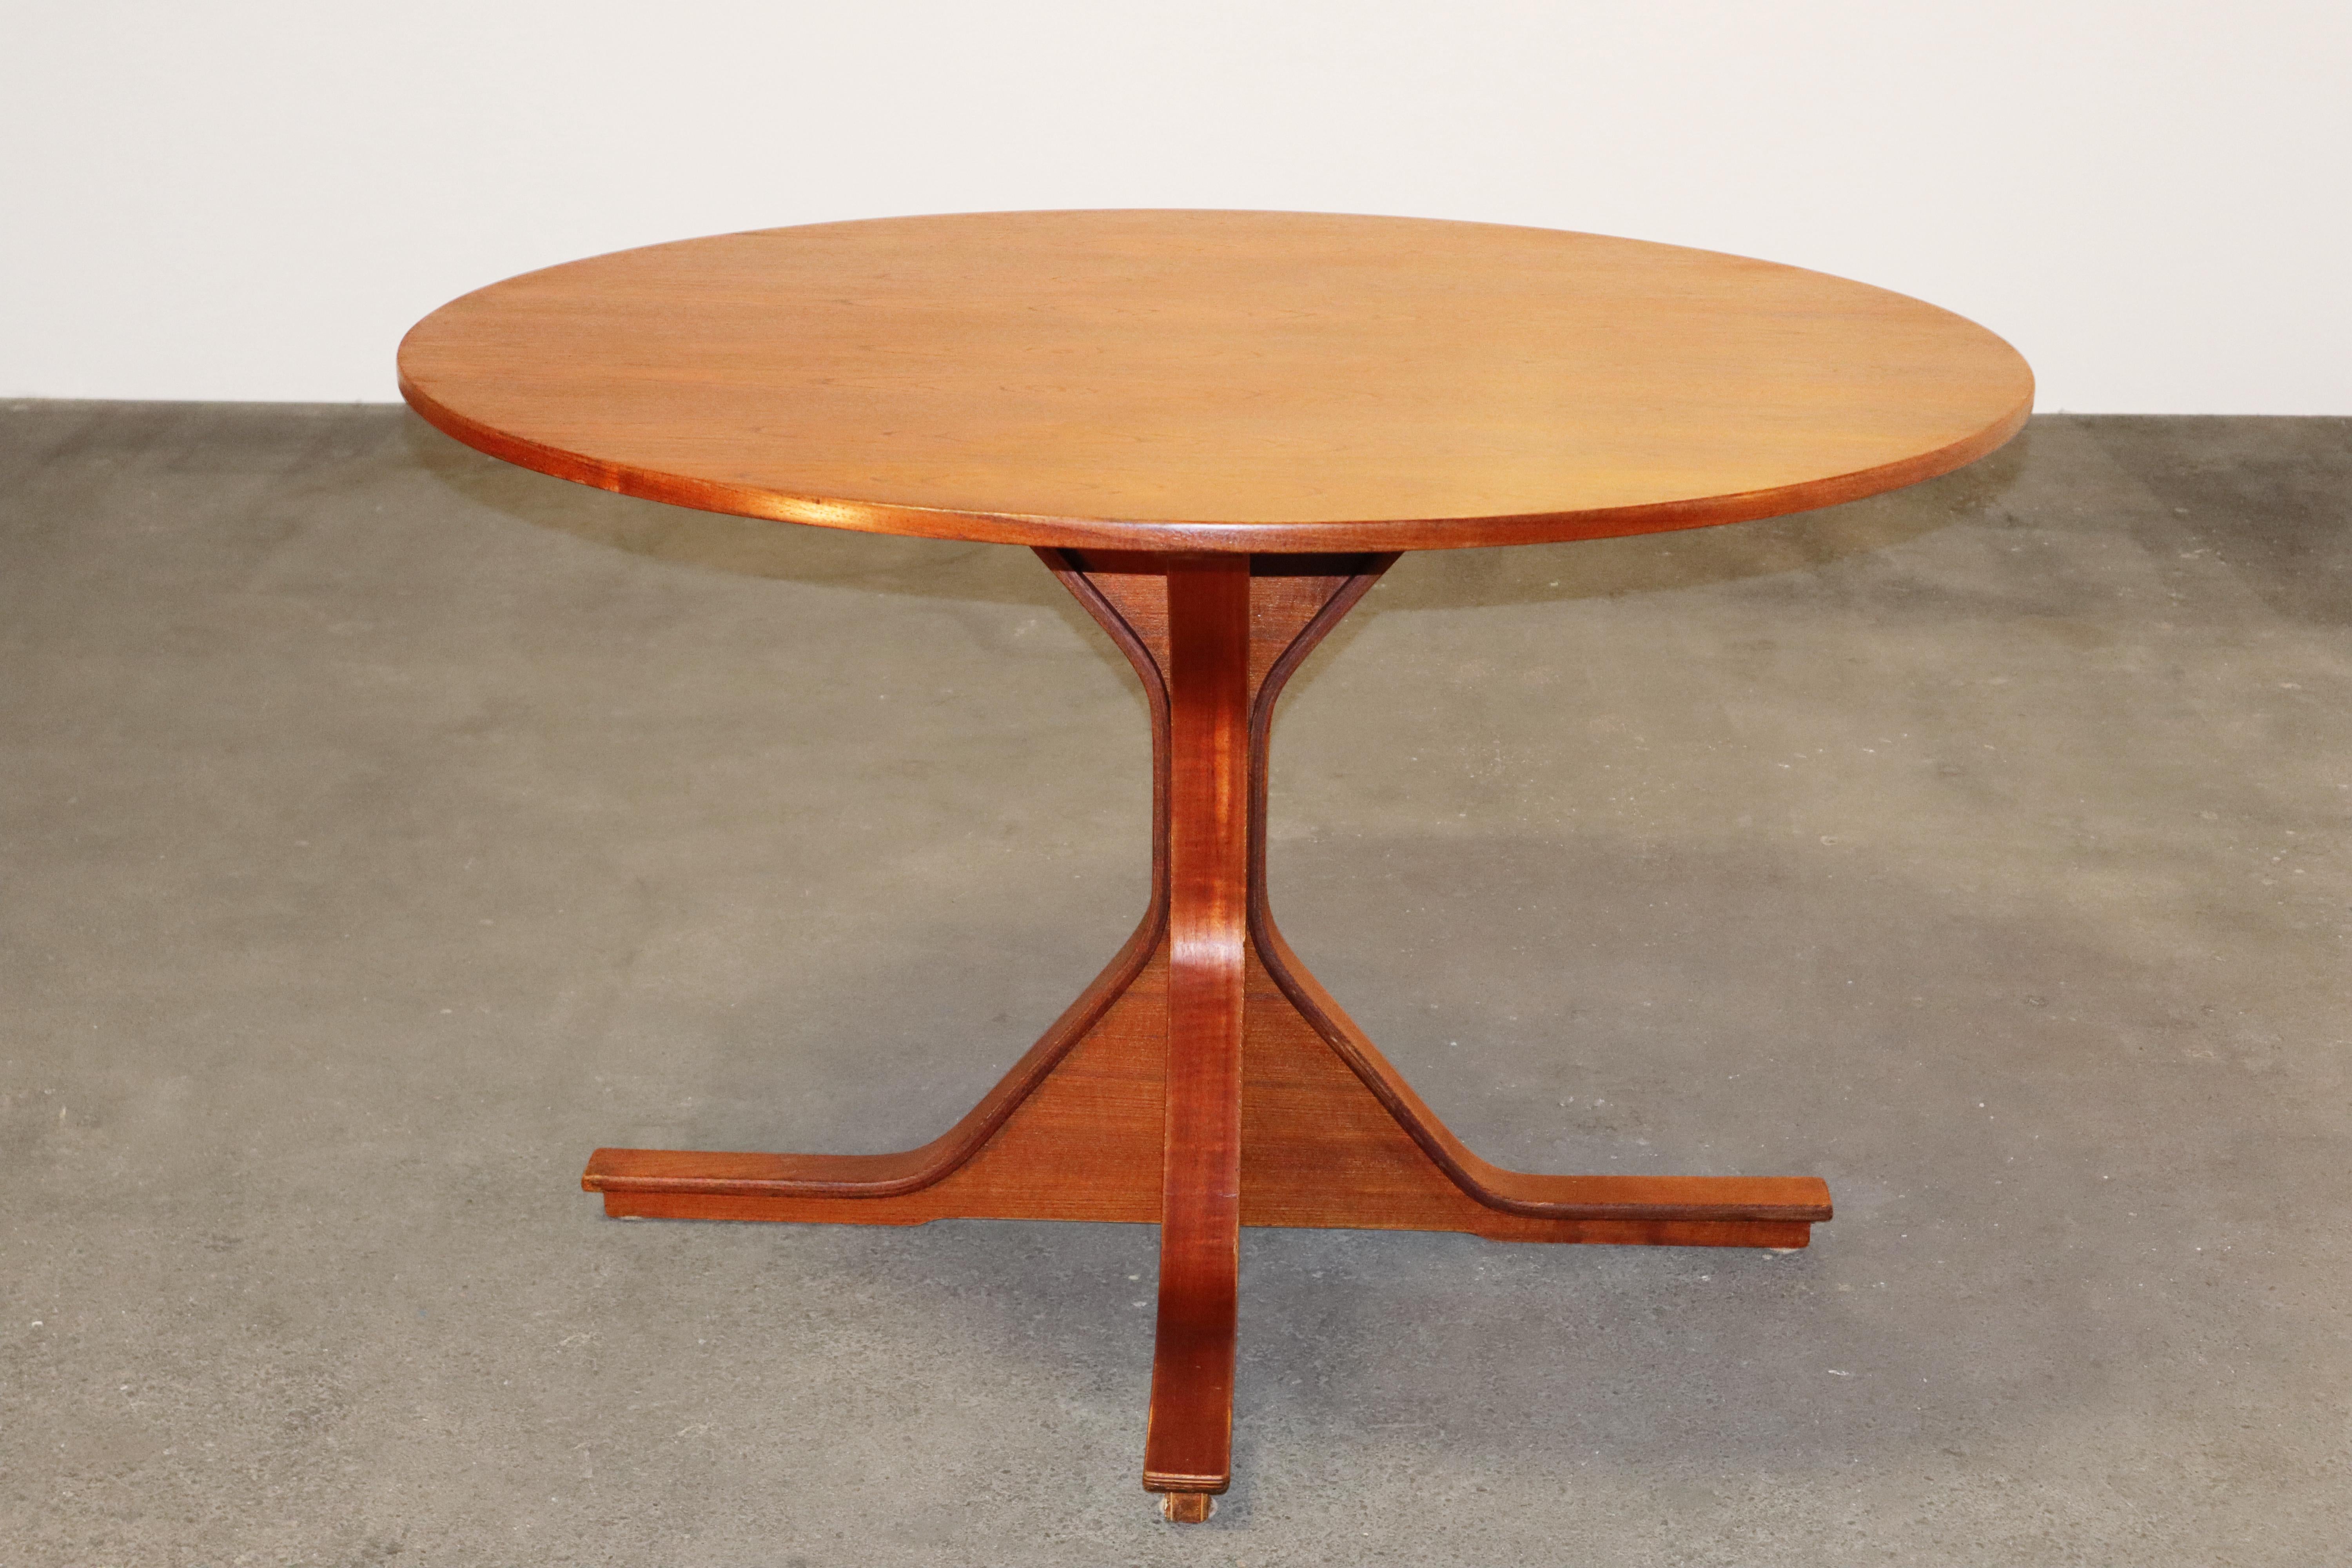 Table de salle à manger ronde italienne des années 1960, modèle 522, par Gianfranco Frattini pour Bernini.

Des formes géométriques et angulaires épurées, sculpturales et influencées par le rationalisme sont associées de manière fascinante à un bois